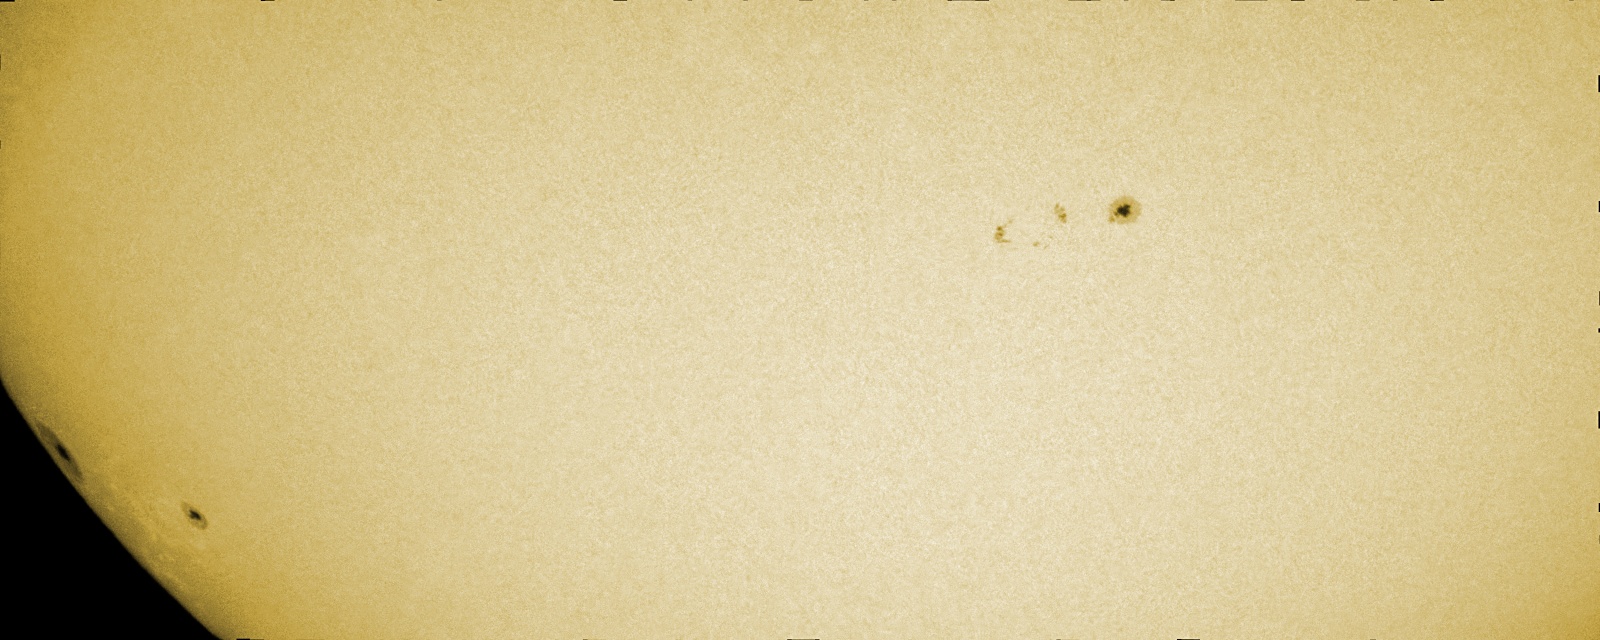 sun20201124.jpg